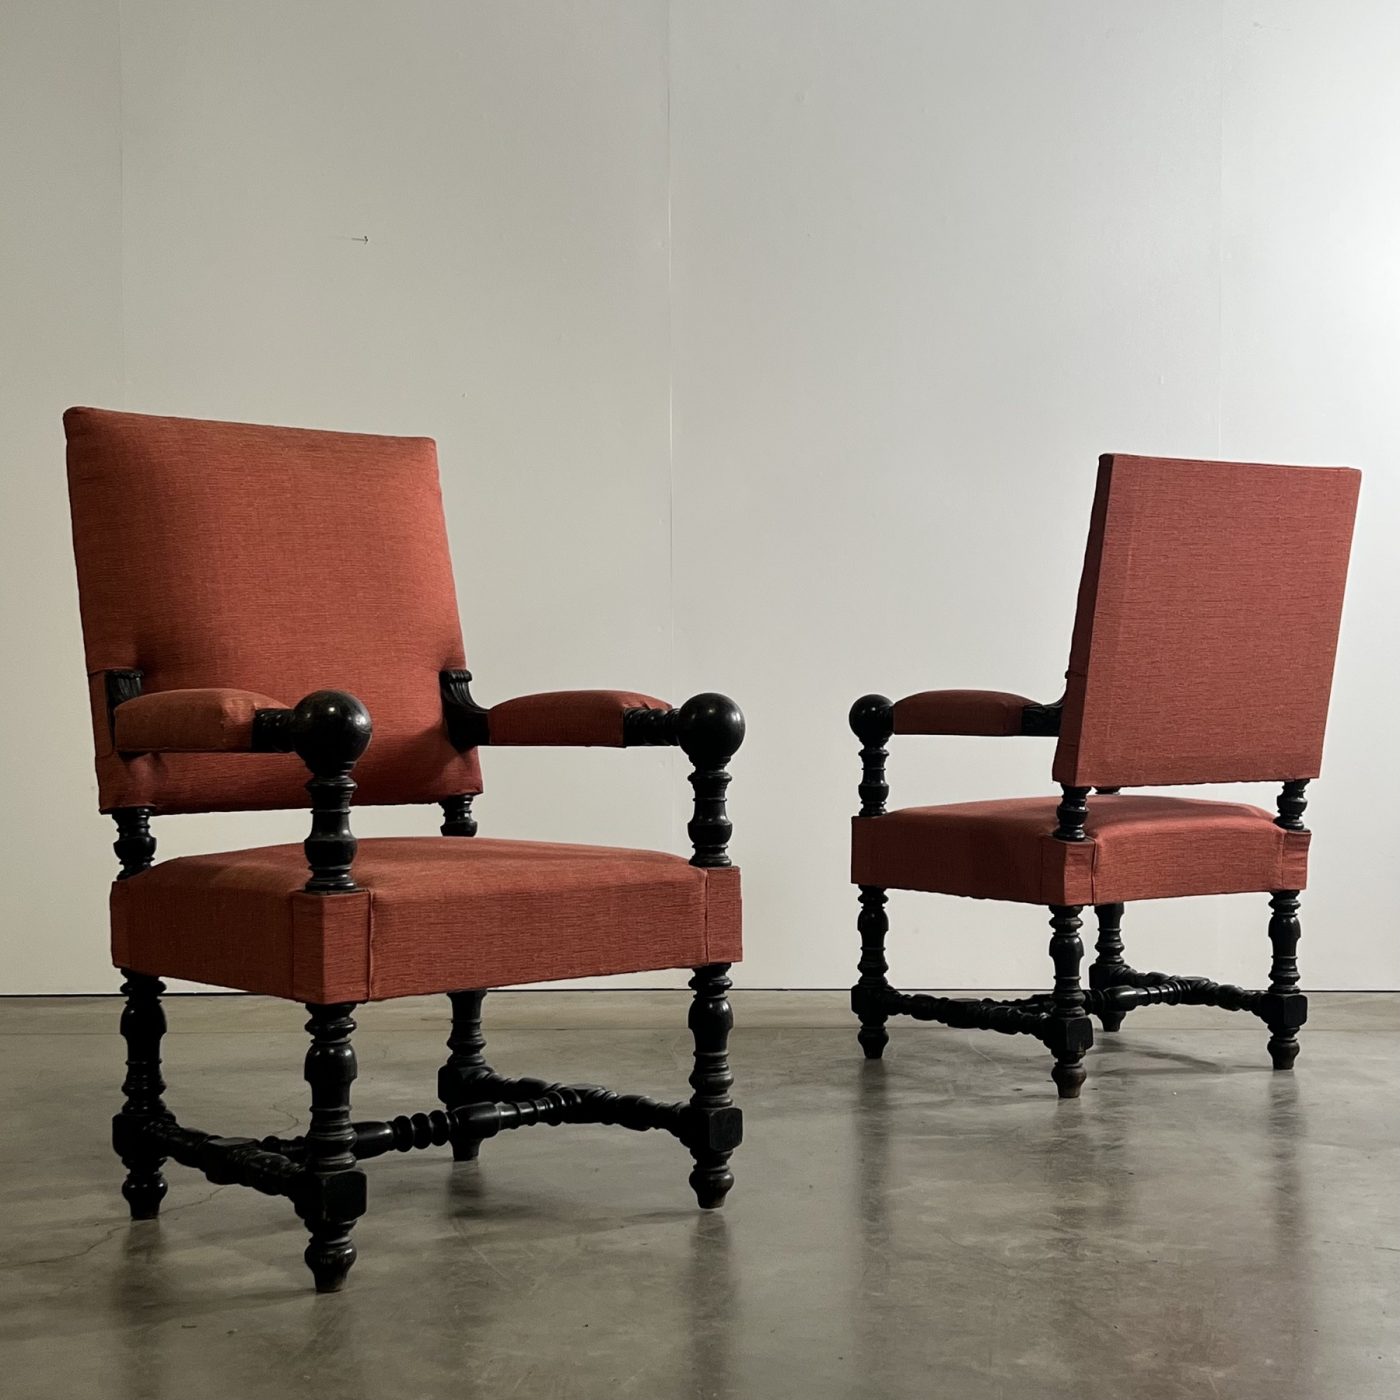 objet-vagabond-napoleon3-armchairs0004